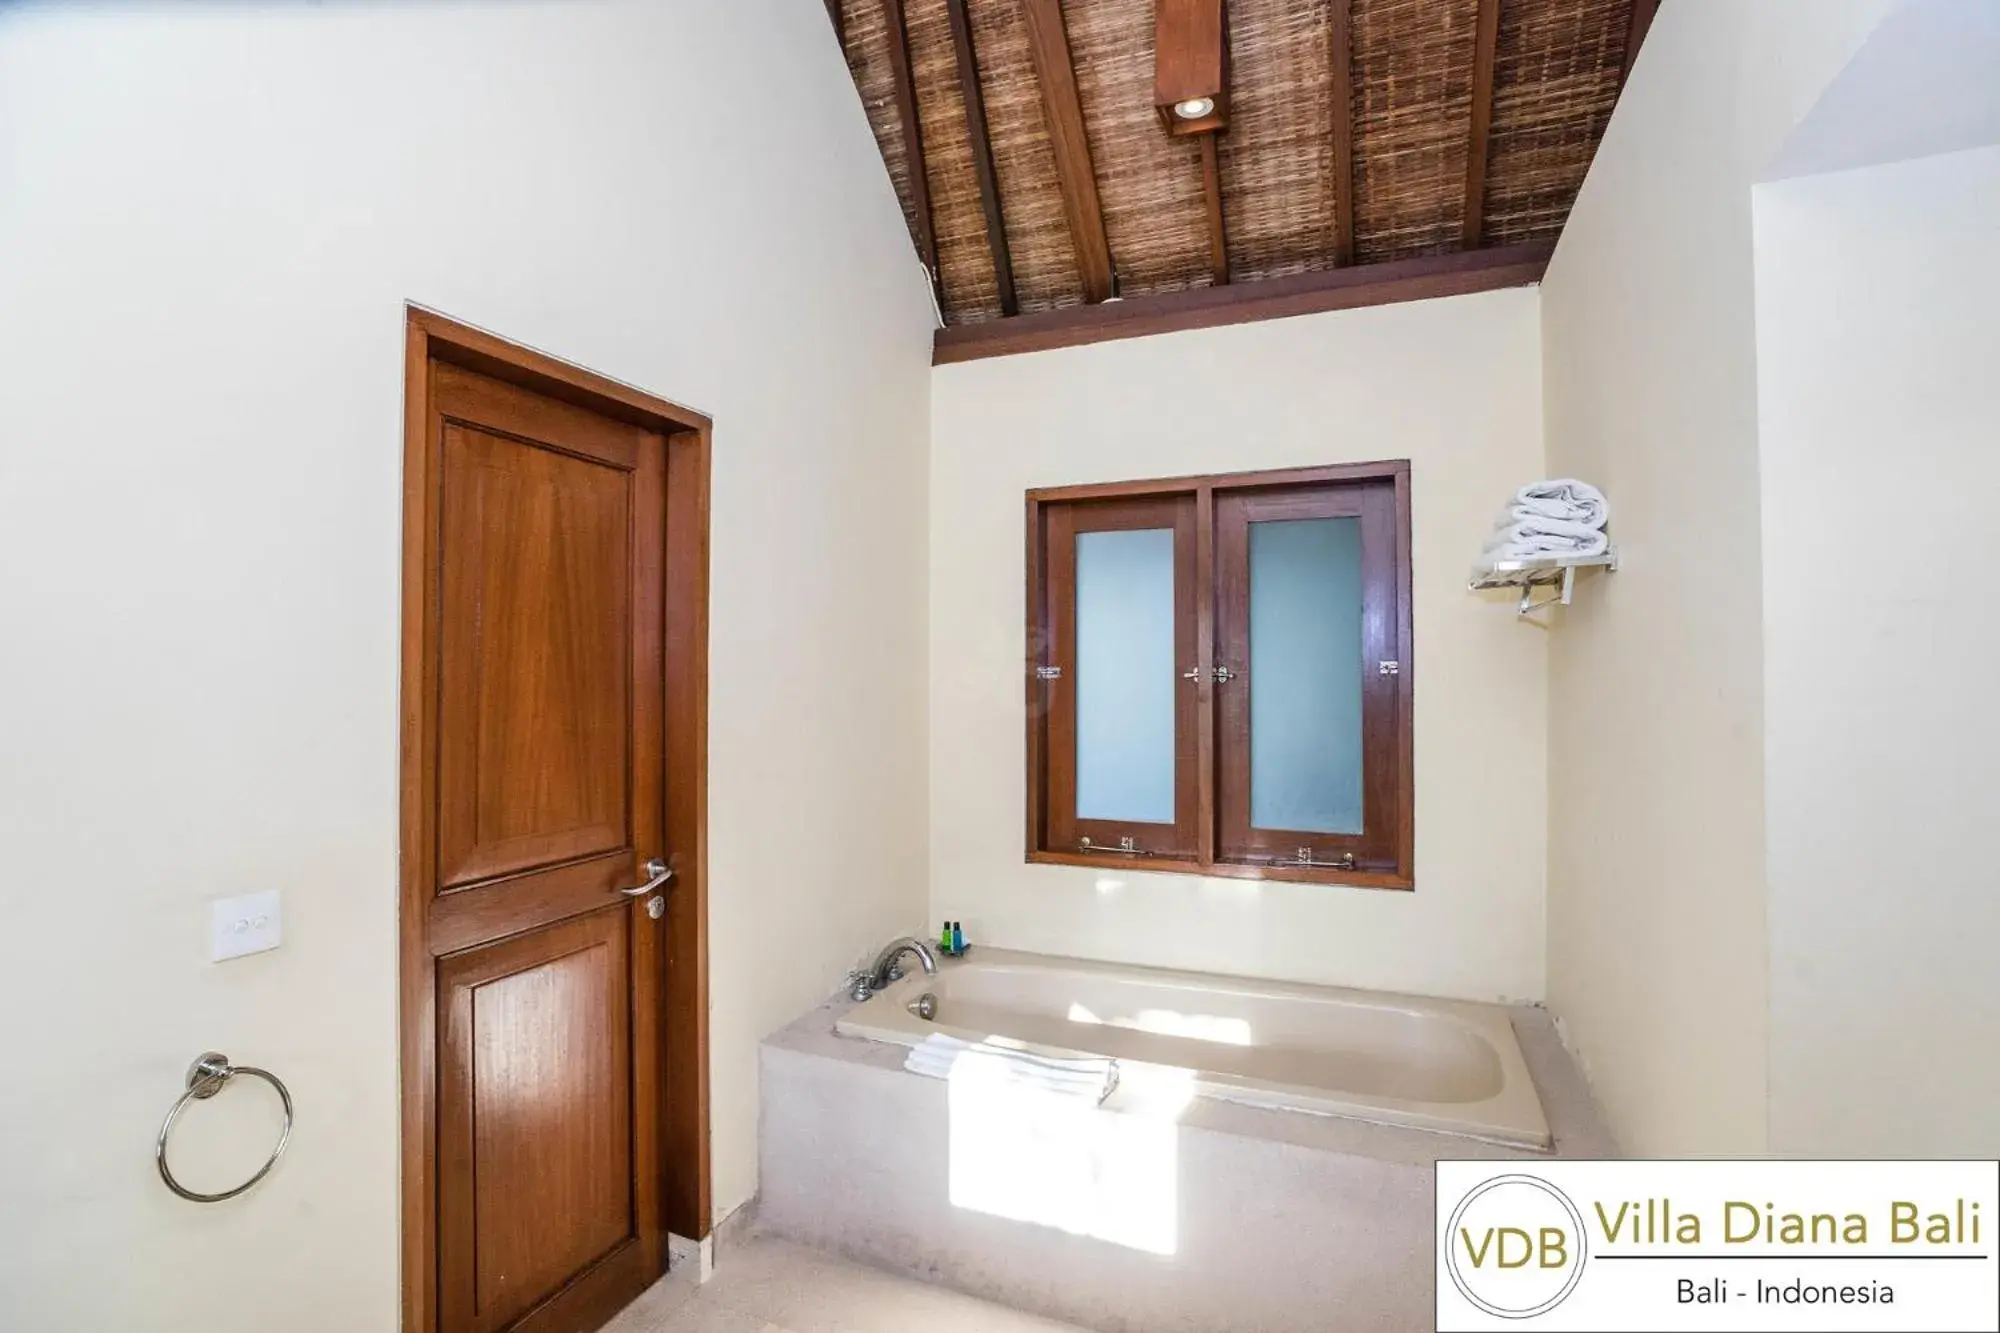 Area and facilities, Bathroom in Villa Diana Bali